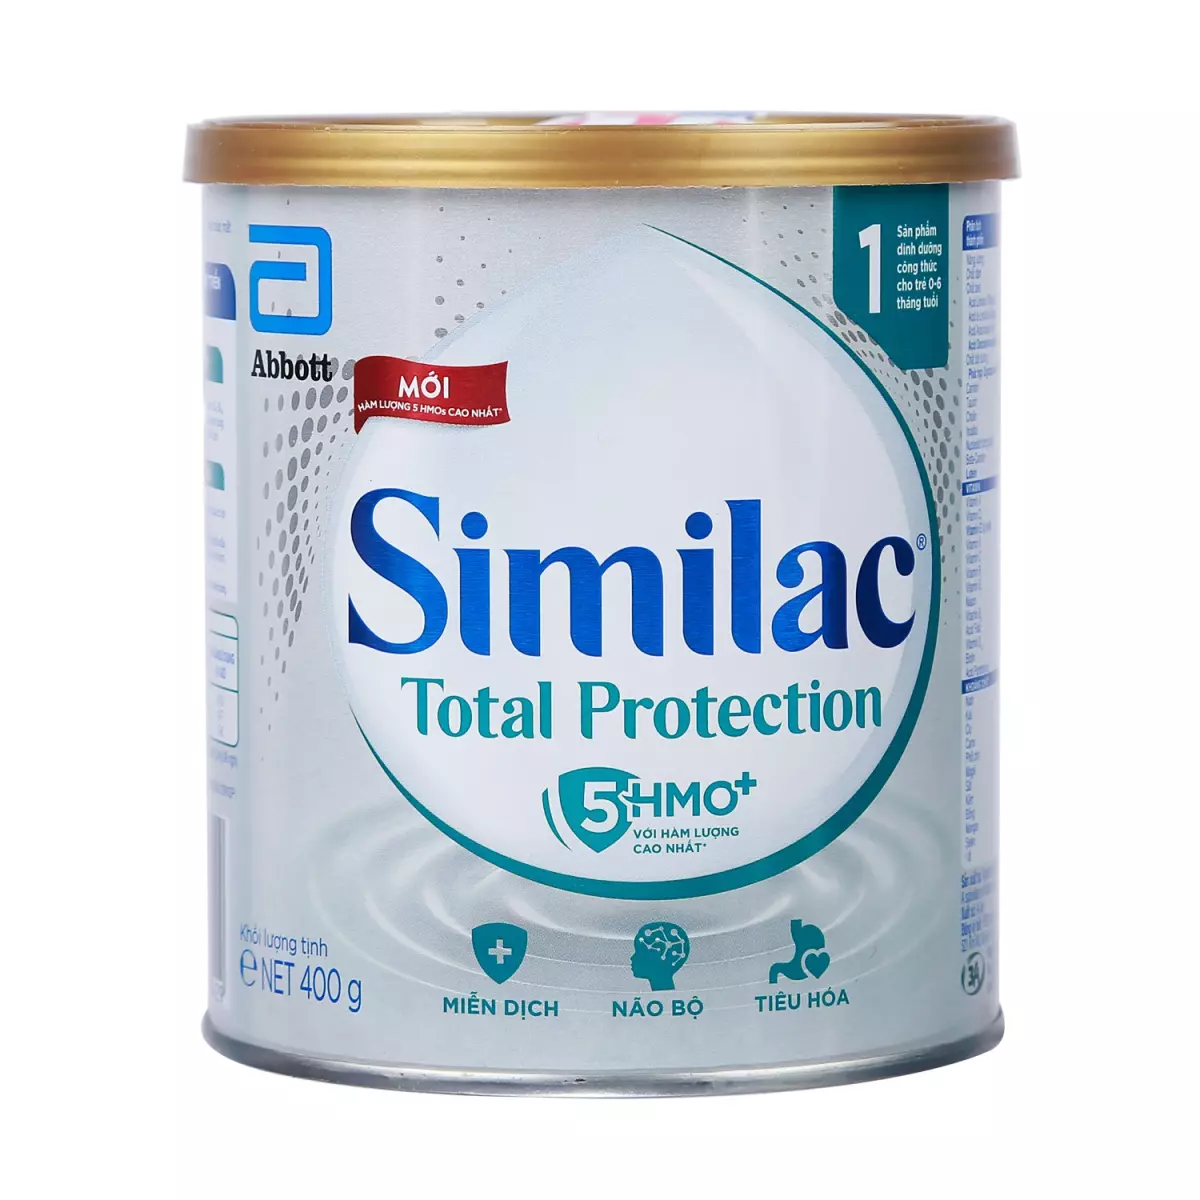 Sữa Similac Total Protection số 1 400g (cho bé 0-6 tháng tuổi)